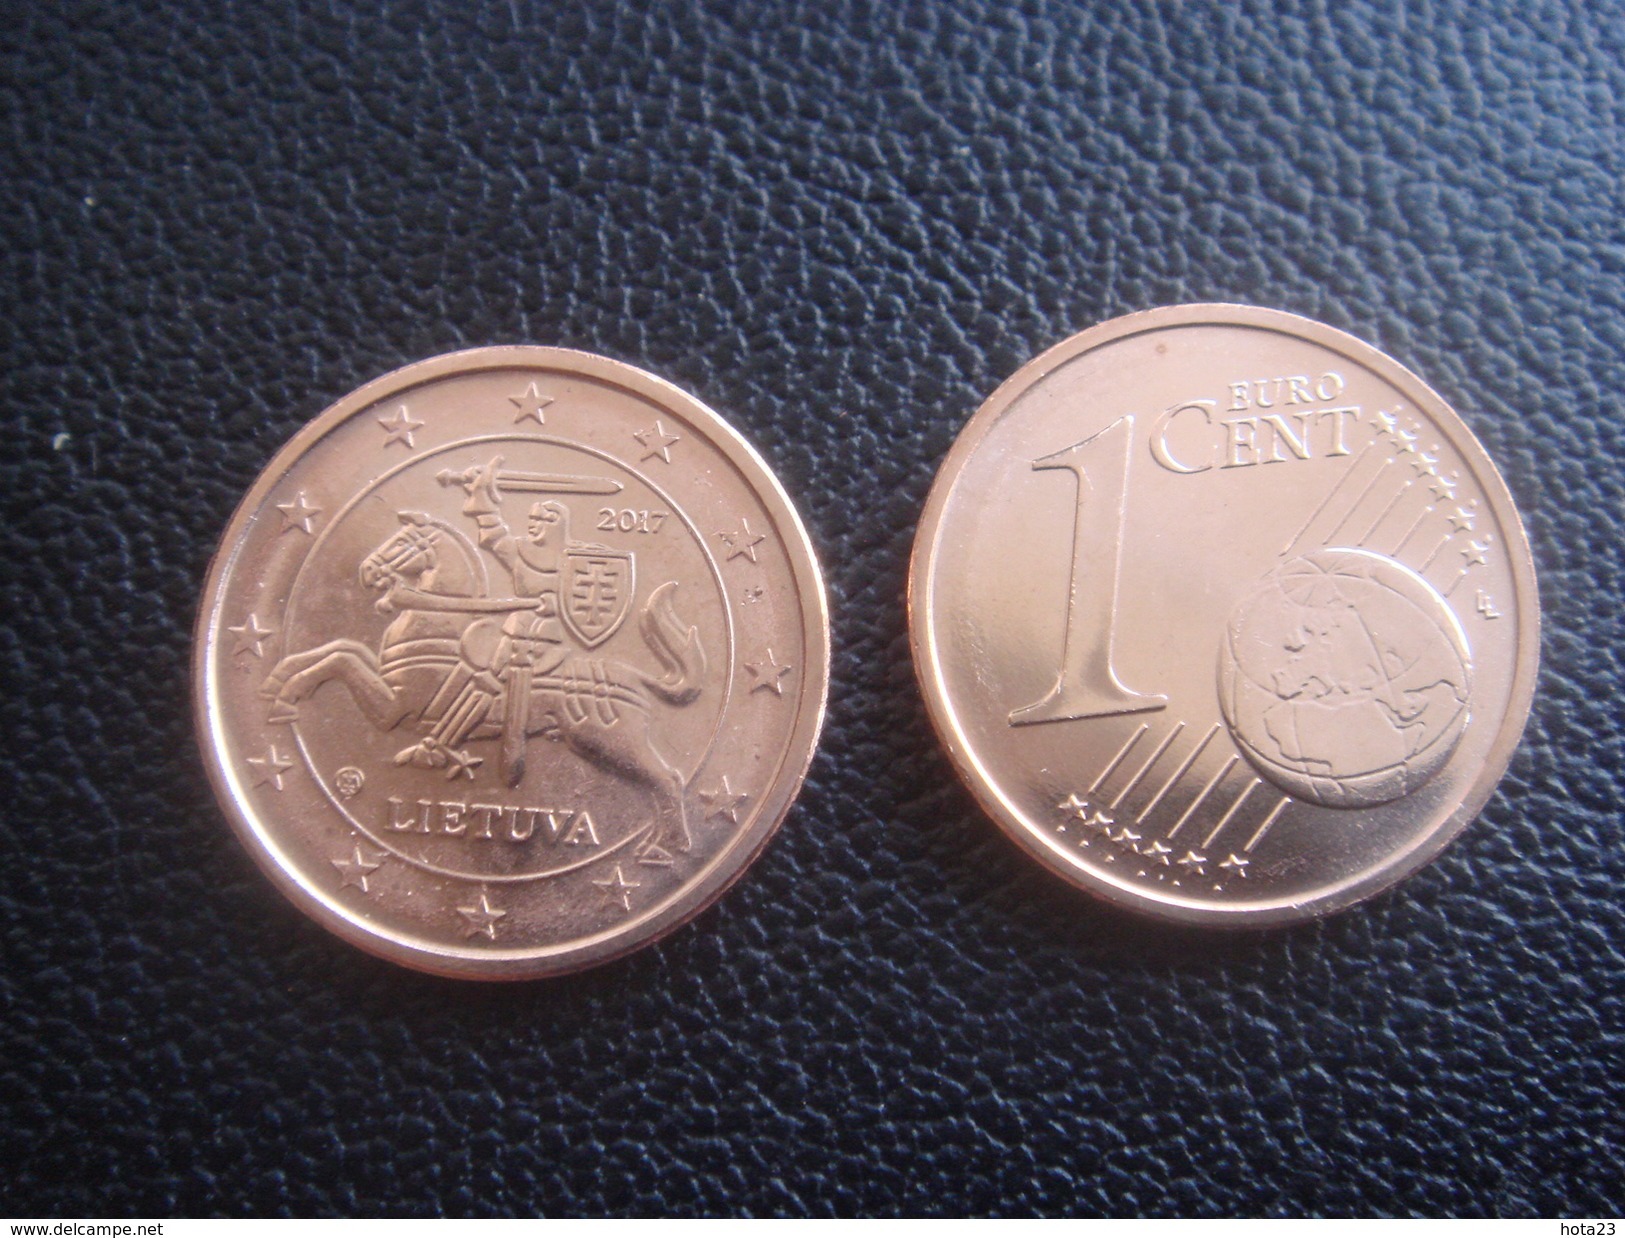 Neu Lithuania Litauen Lietuva  1 Euro Cent 2017  Münzen Aus Rolle  UNC - Litauen